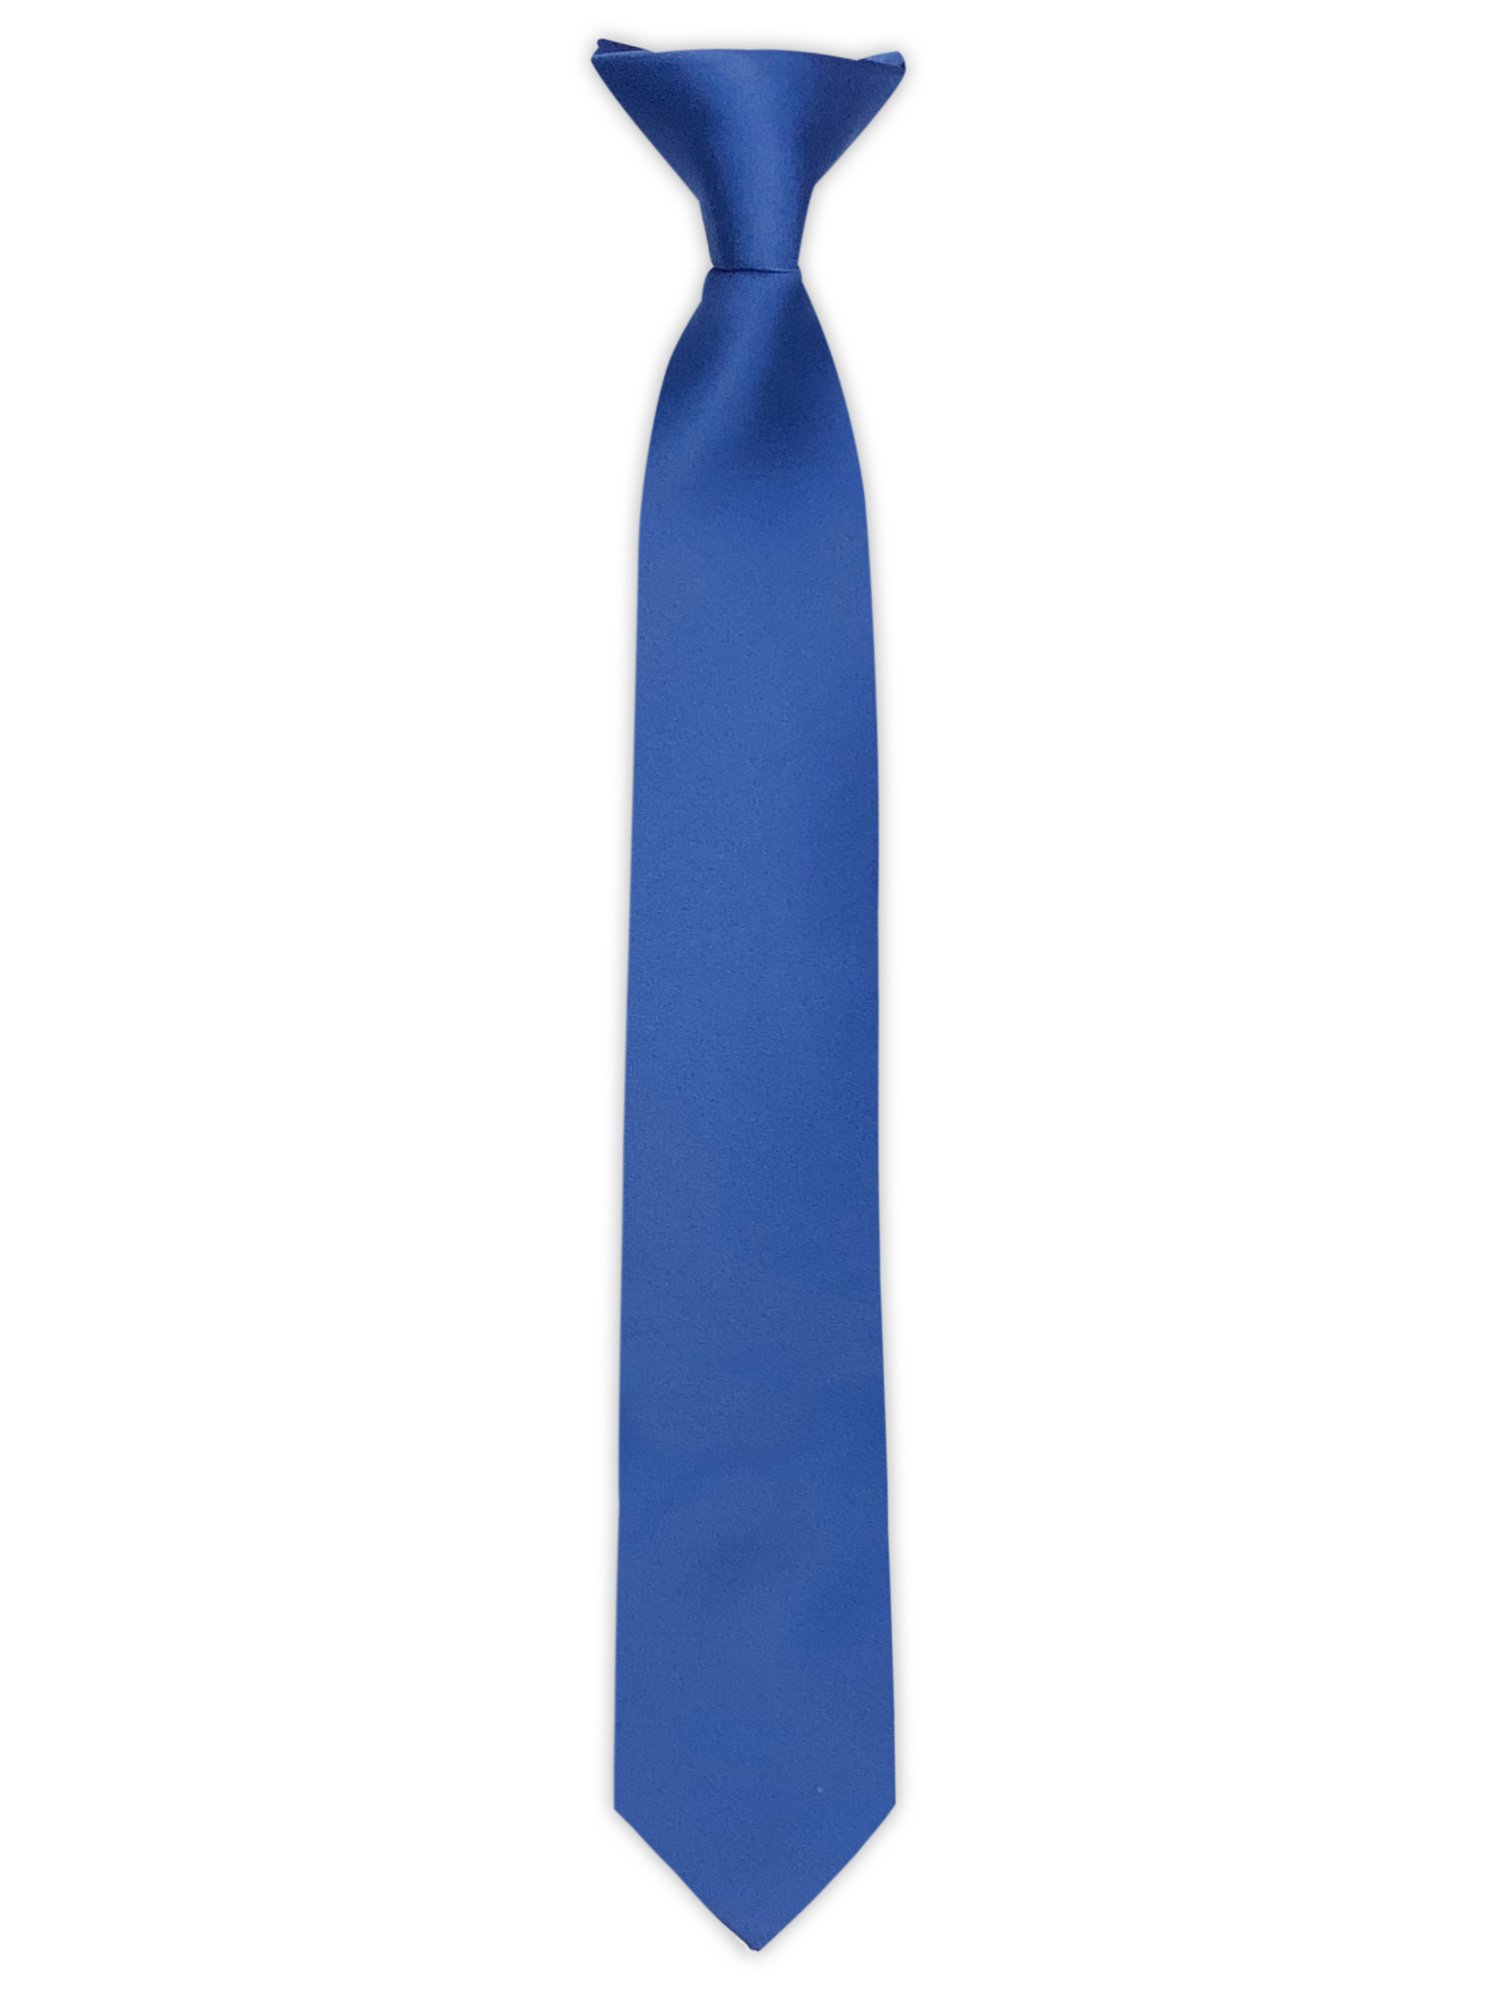 Classical Mens /& Boys Necktie-Durable Necktie For Party Office Uniform